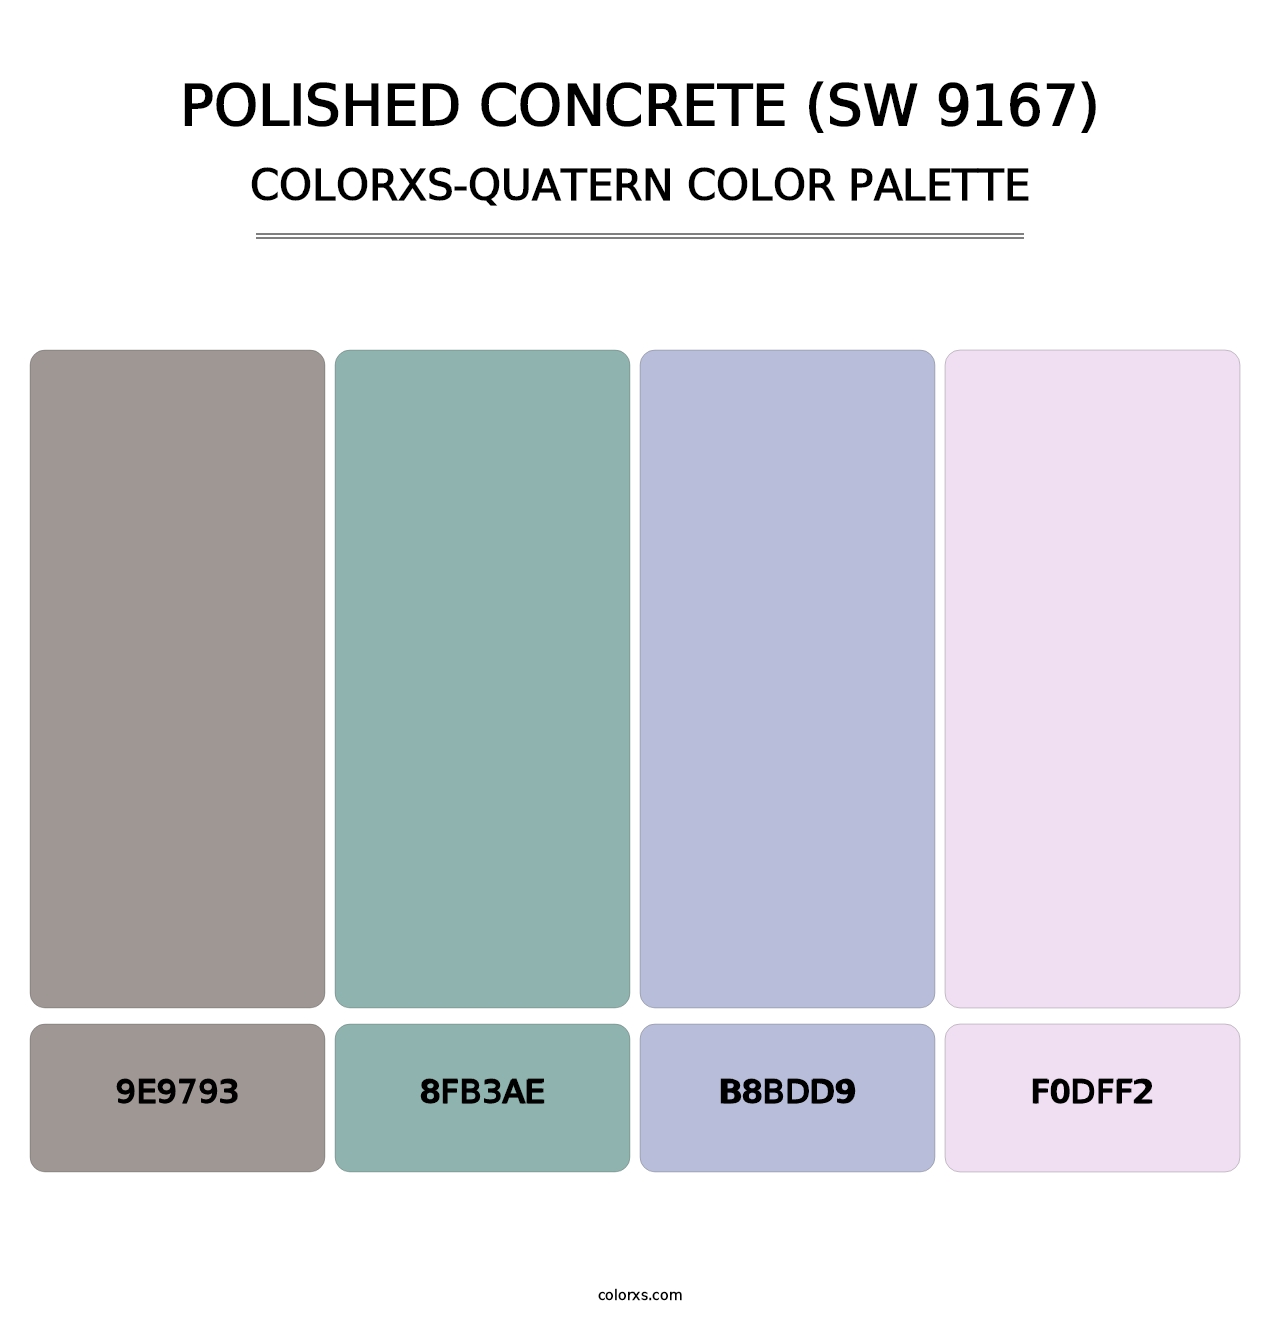 Polished Concrete (SW 9167) - Colorxs Quatern Palette